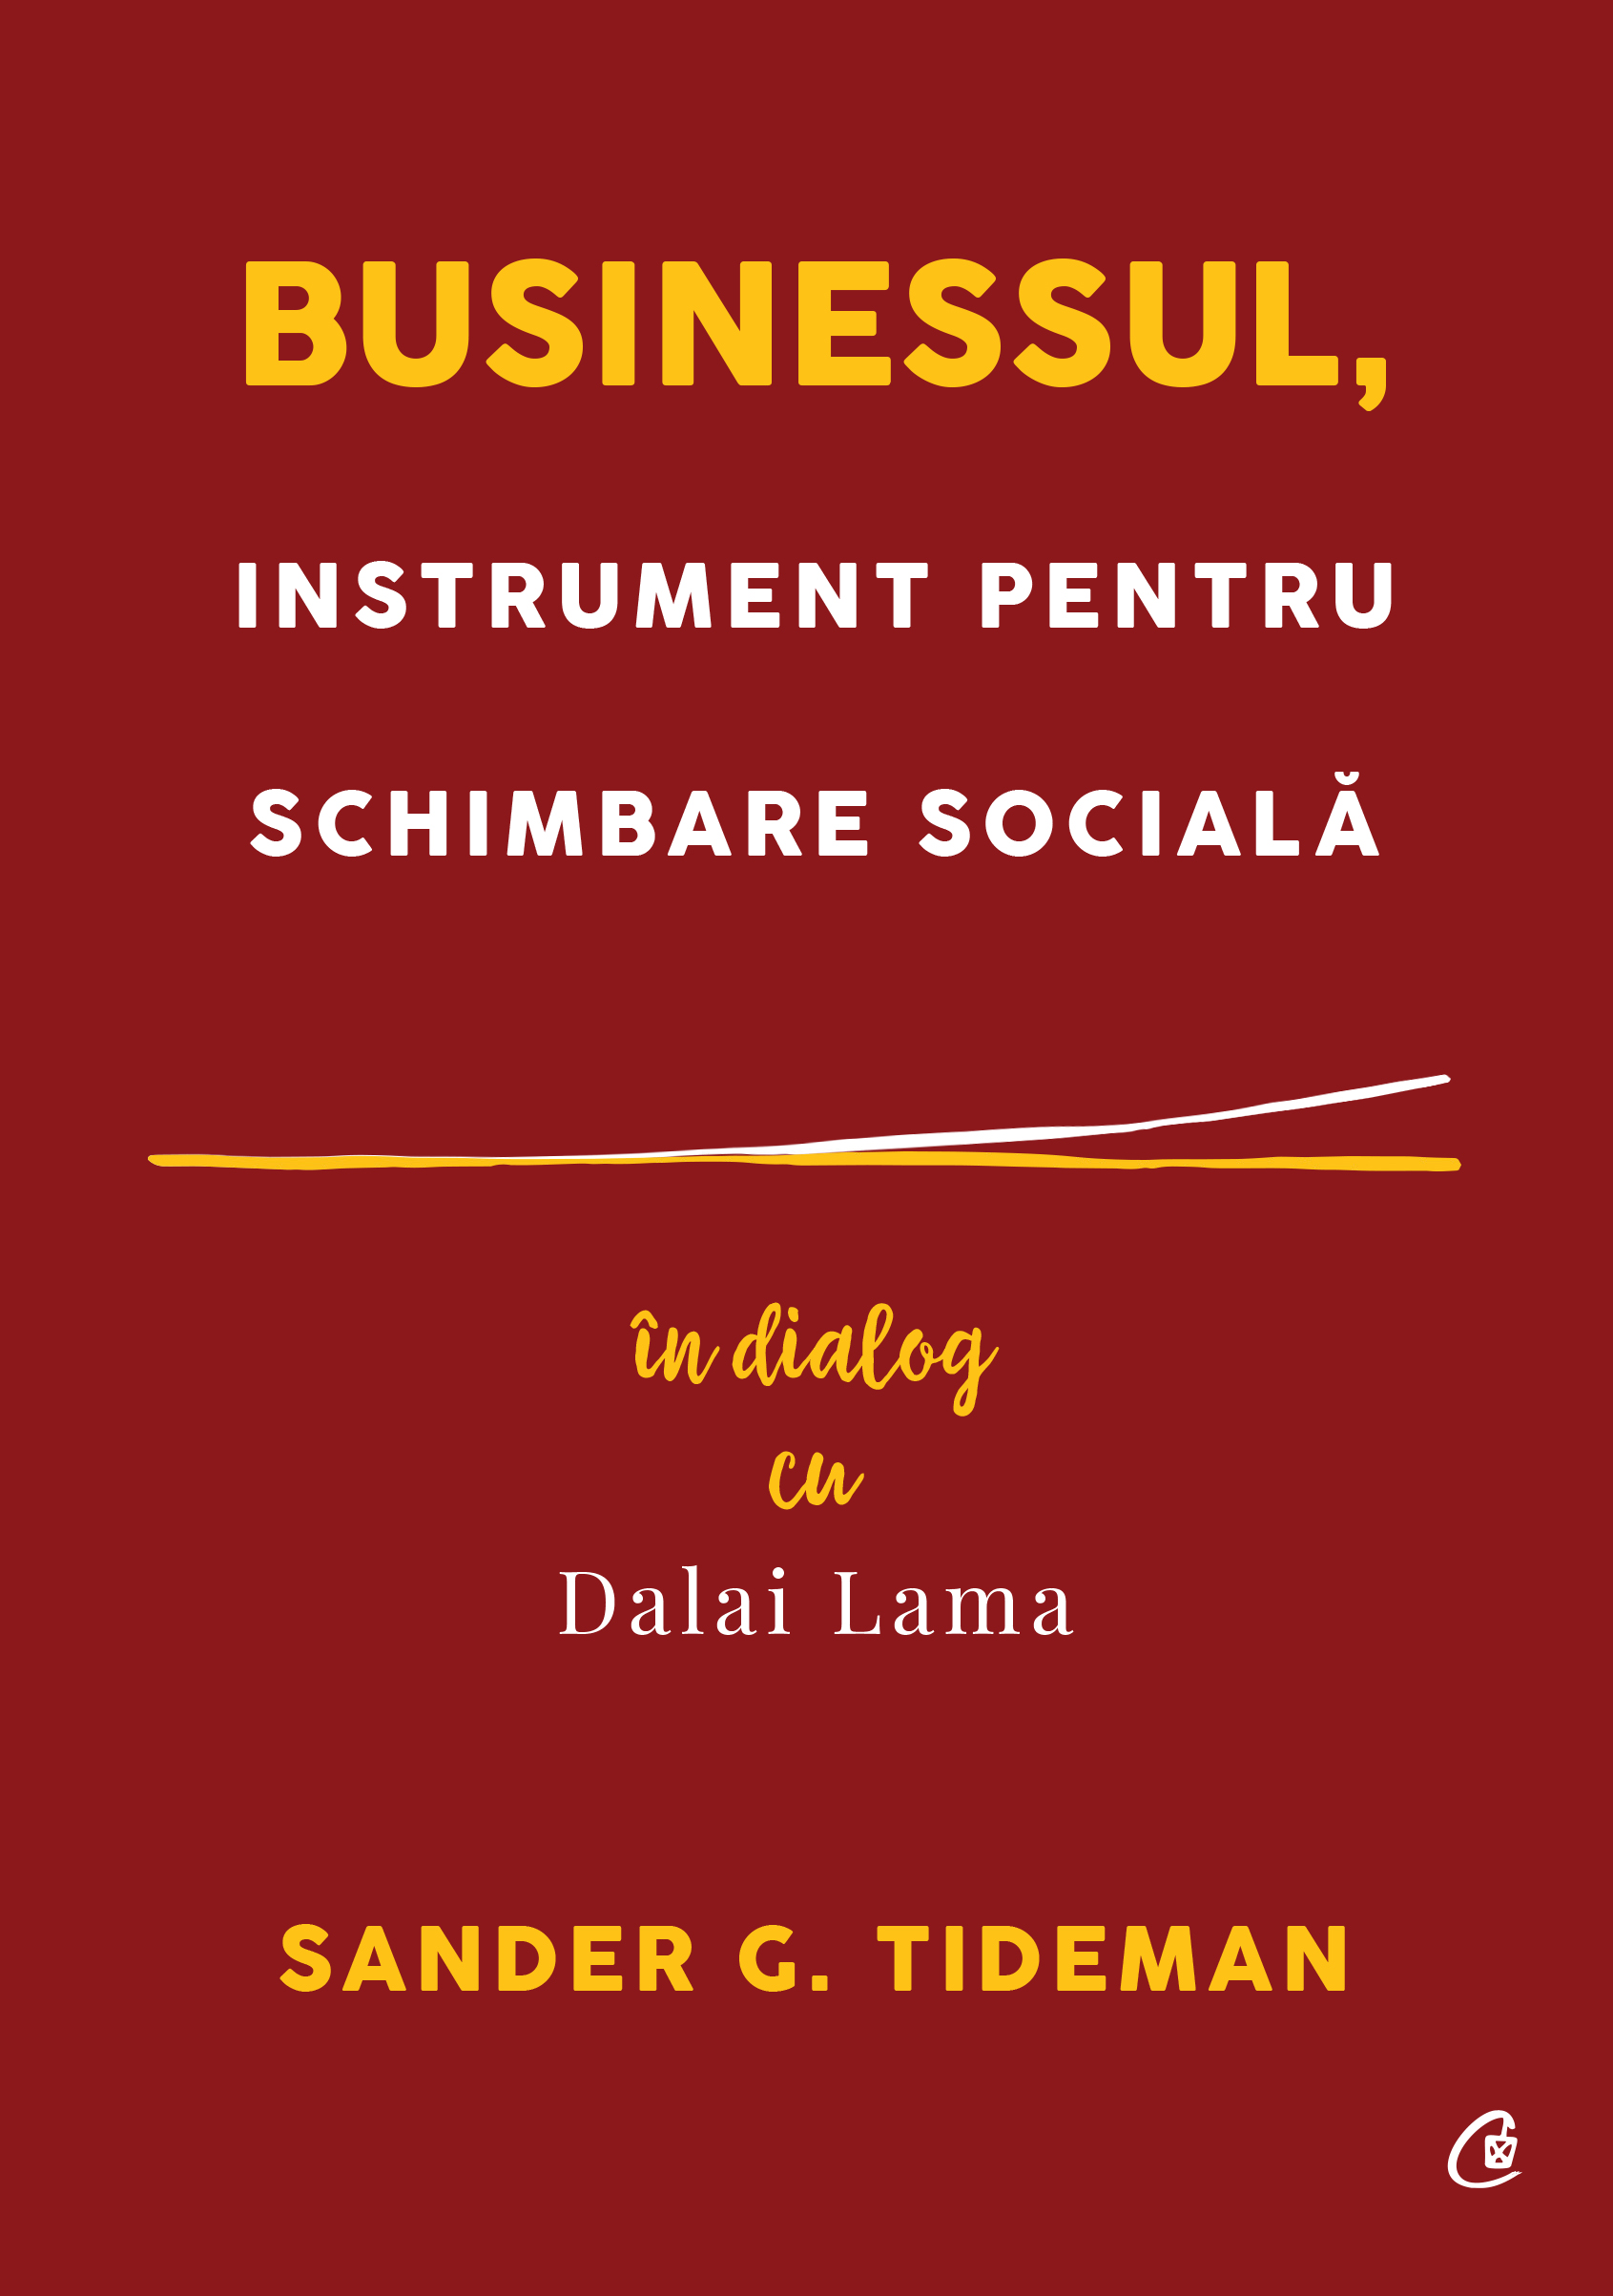 Businessul, instrument pentru schimbare sociala | Sander G. Tideman Businessul poza 2022